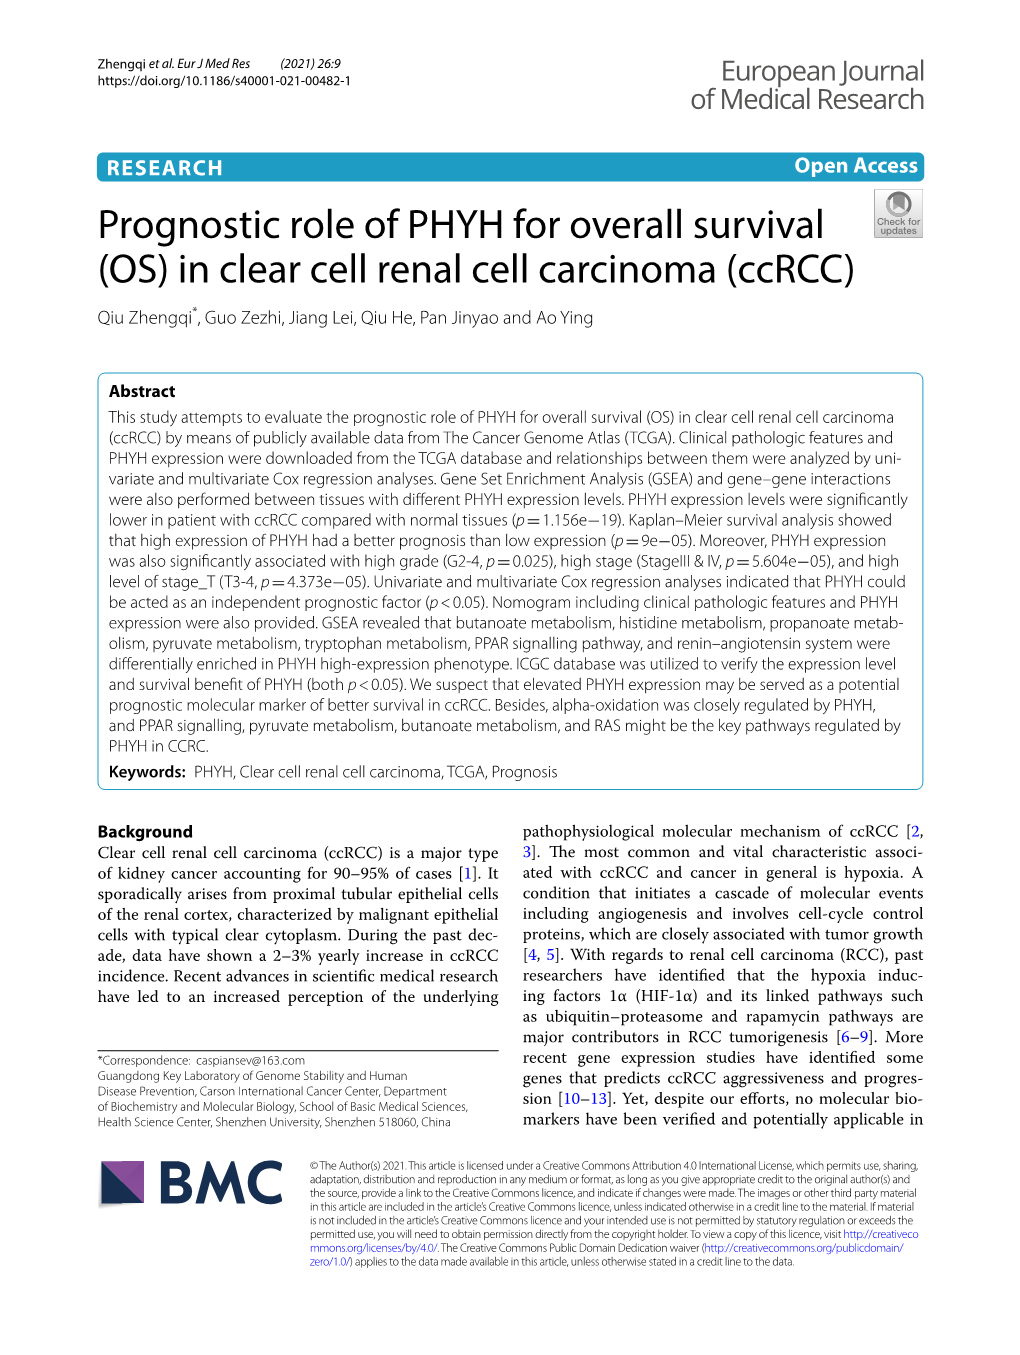 Prognostic Role of PHYH for Overall Survival (OS) in Clear Cell Renal Cell Carcinoma (Ccrcc) Qiu Zhengqi*, Guo Zezhi, Jiang Lei, Qiu He, Pan Jinyao and Ao Ying